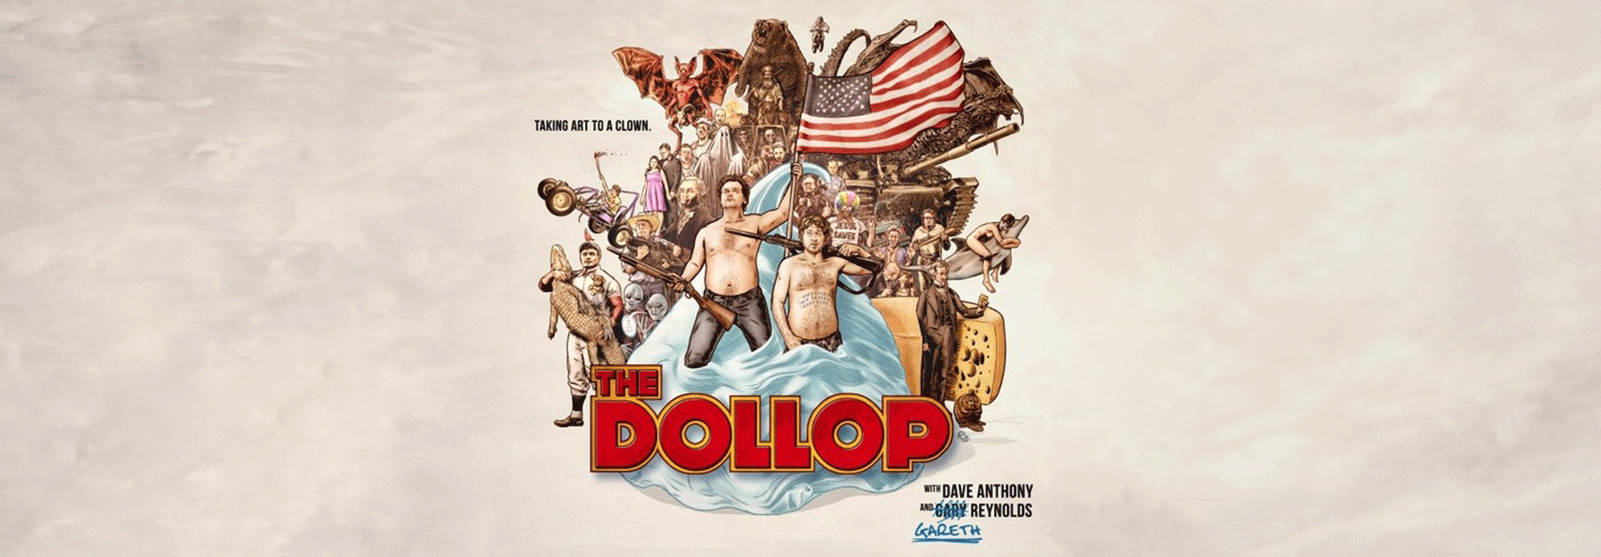 The Dollop